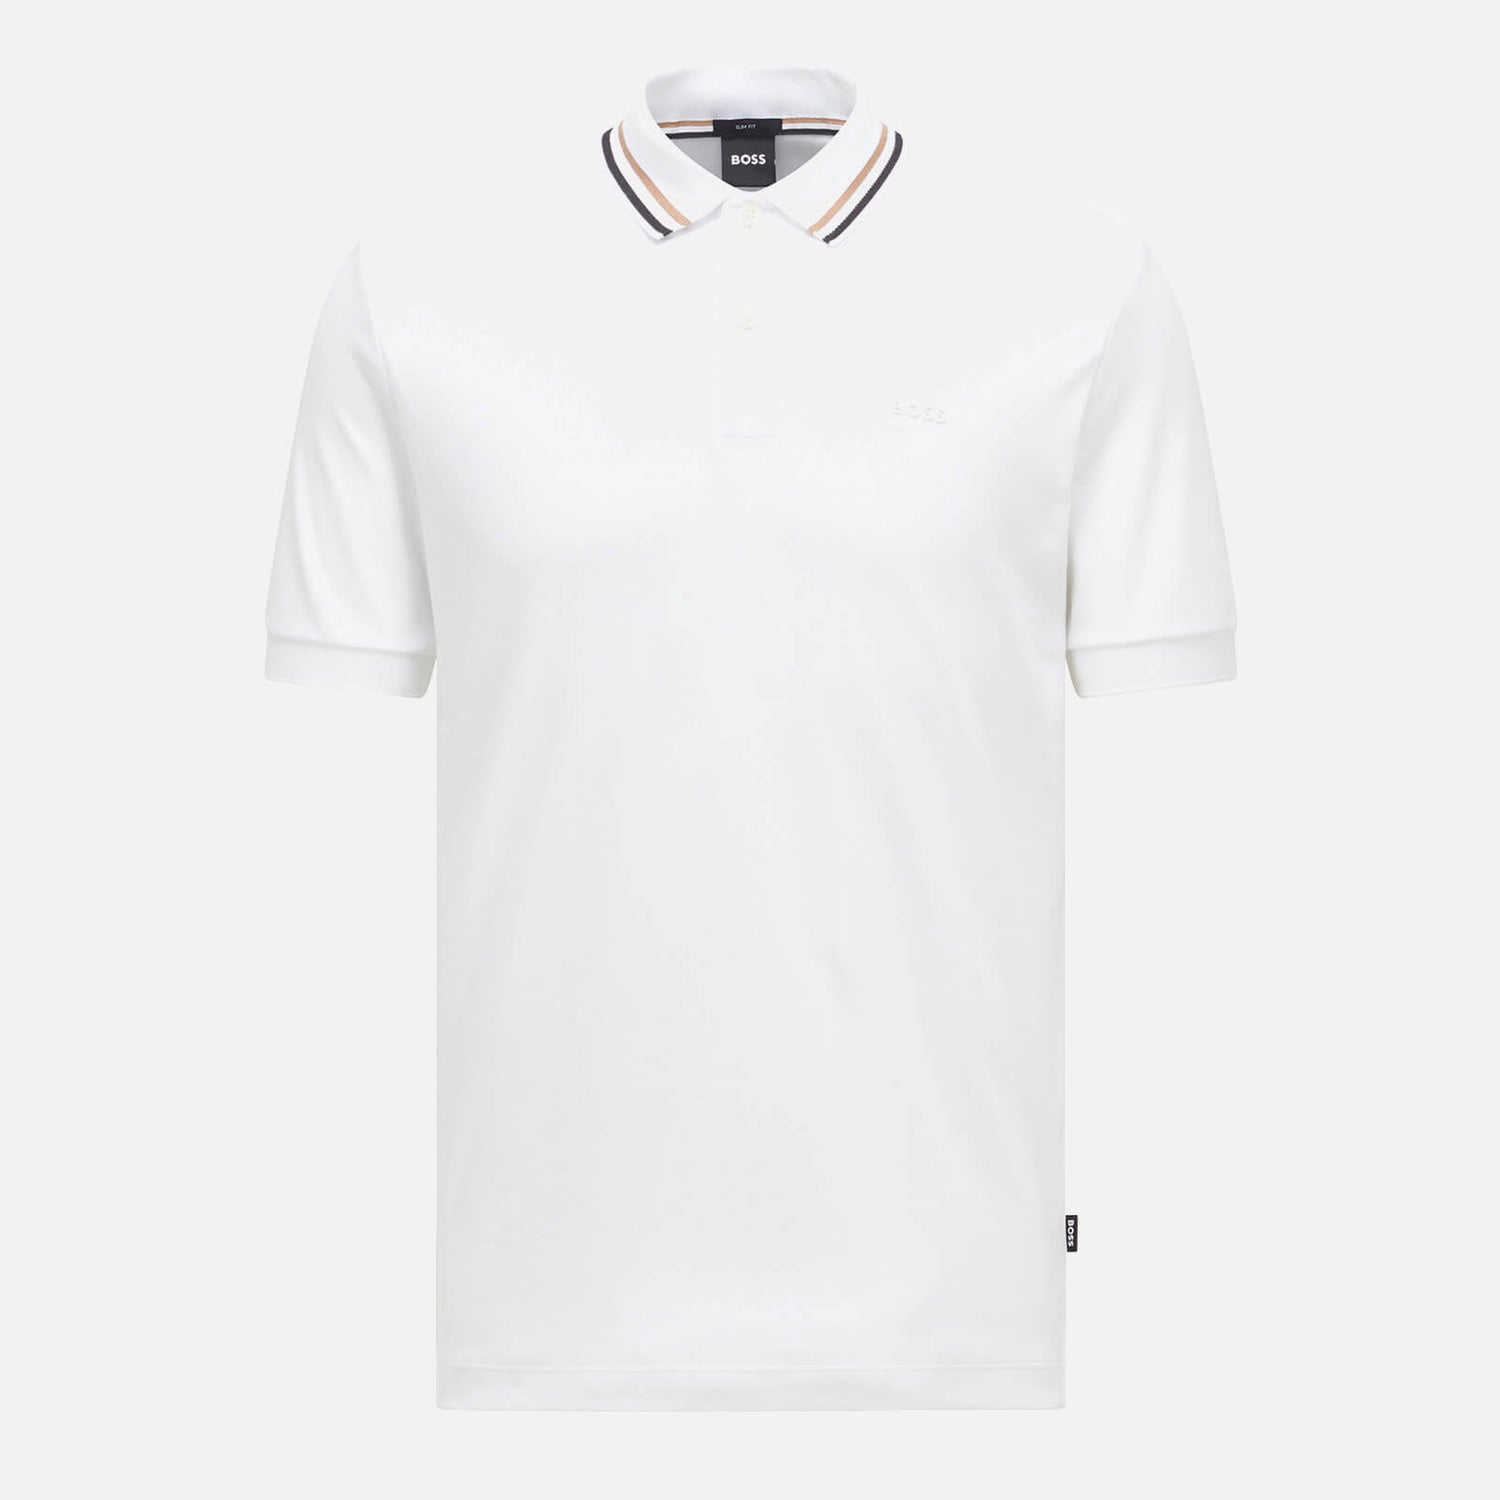 BOSS Smart Casual Men's Penrose 38 Polo Shirt - White - S